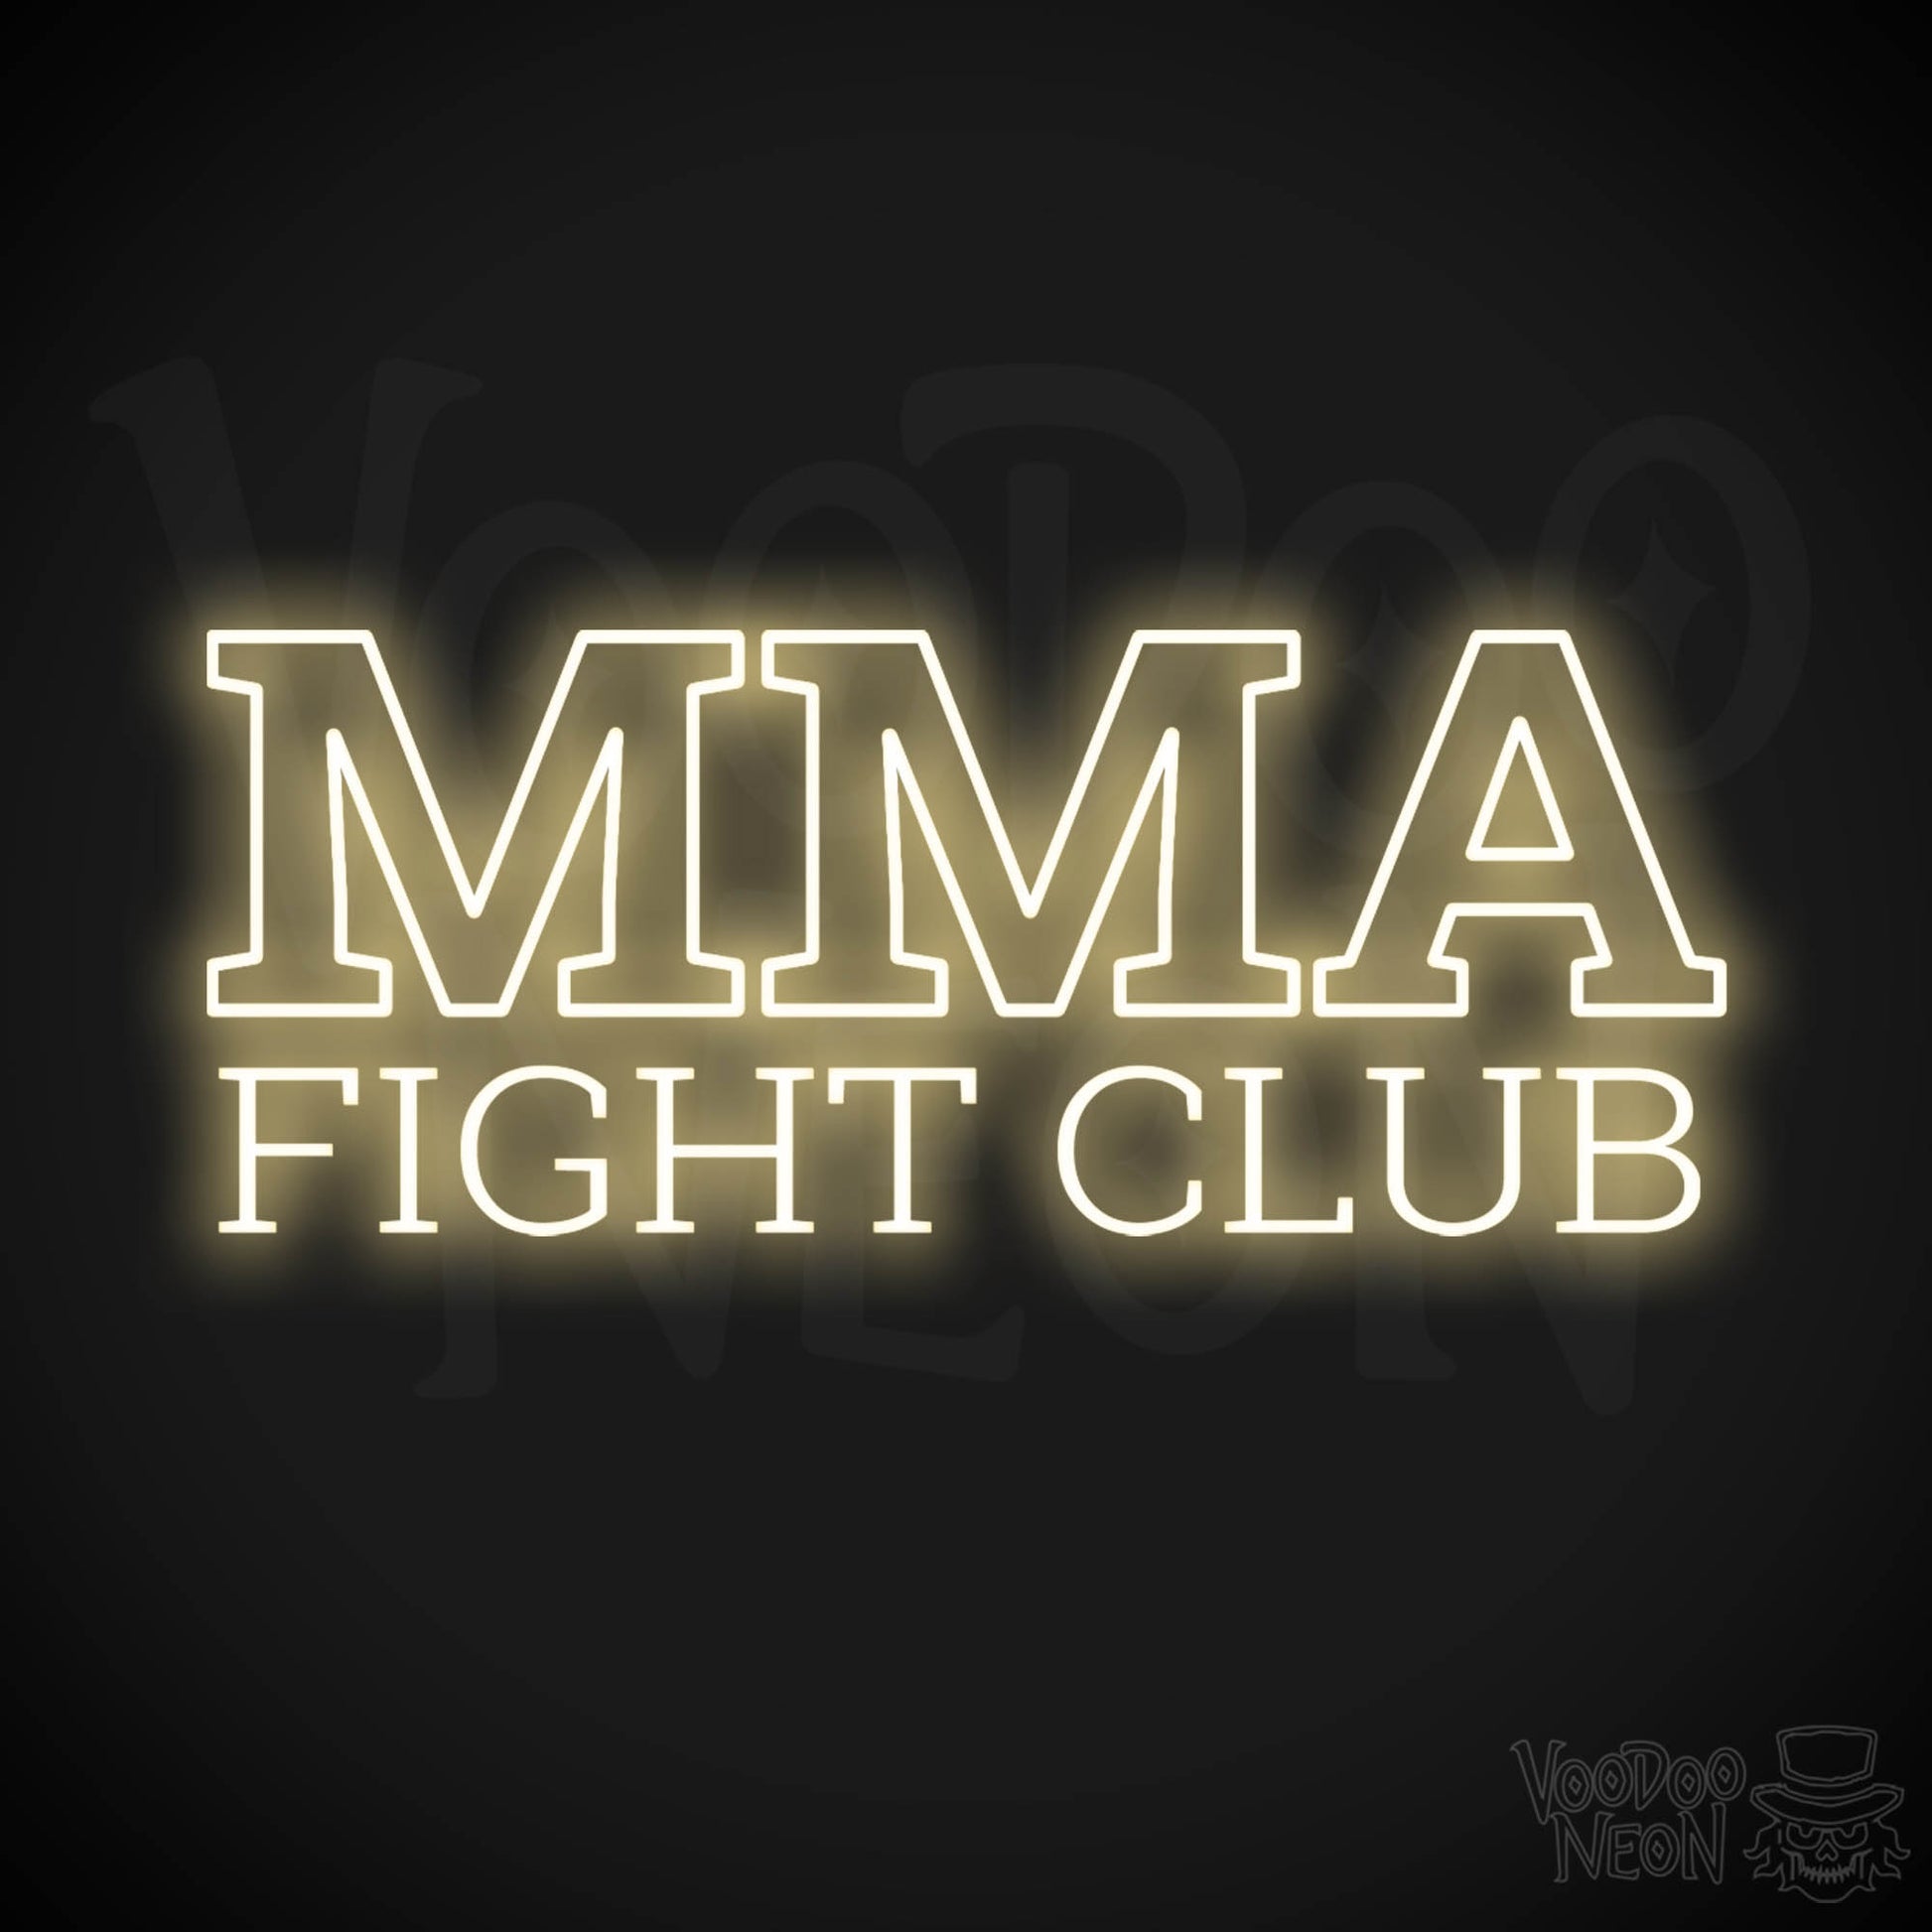 MMA Gym LED Neon - Warm White